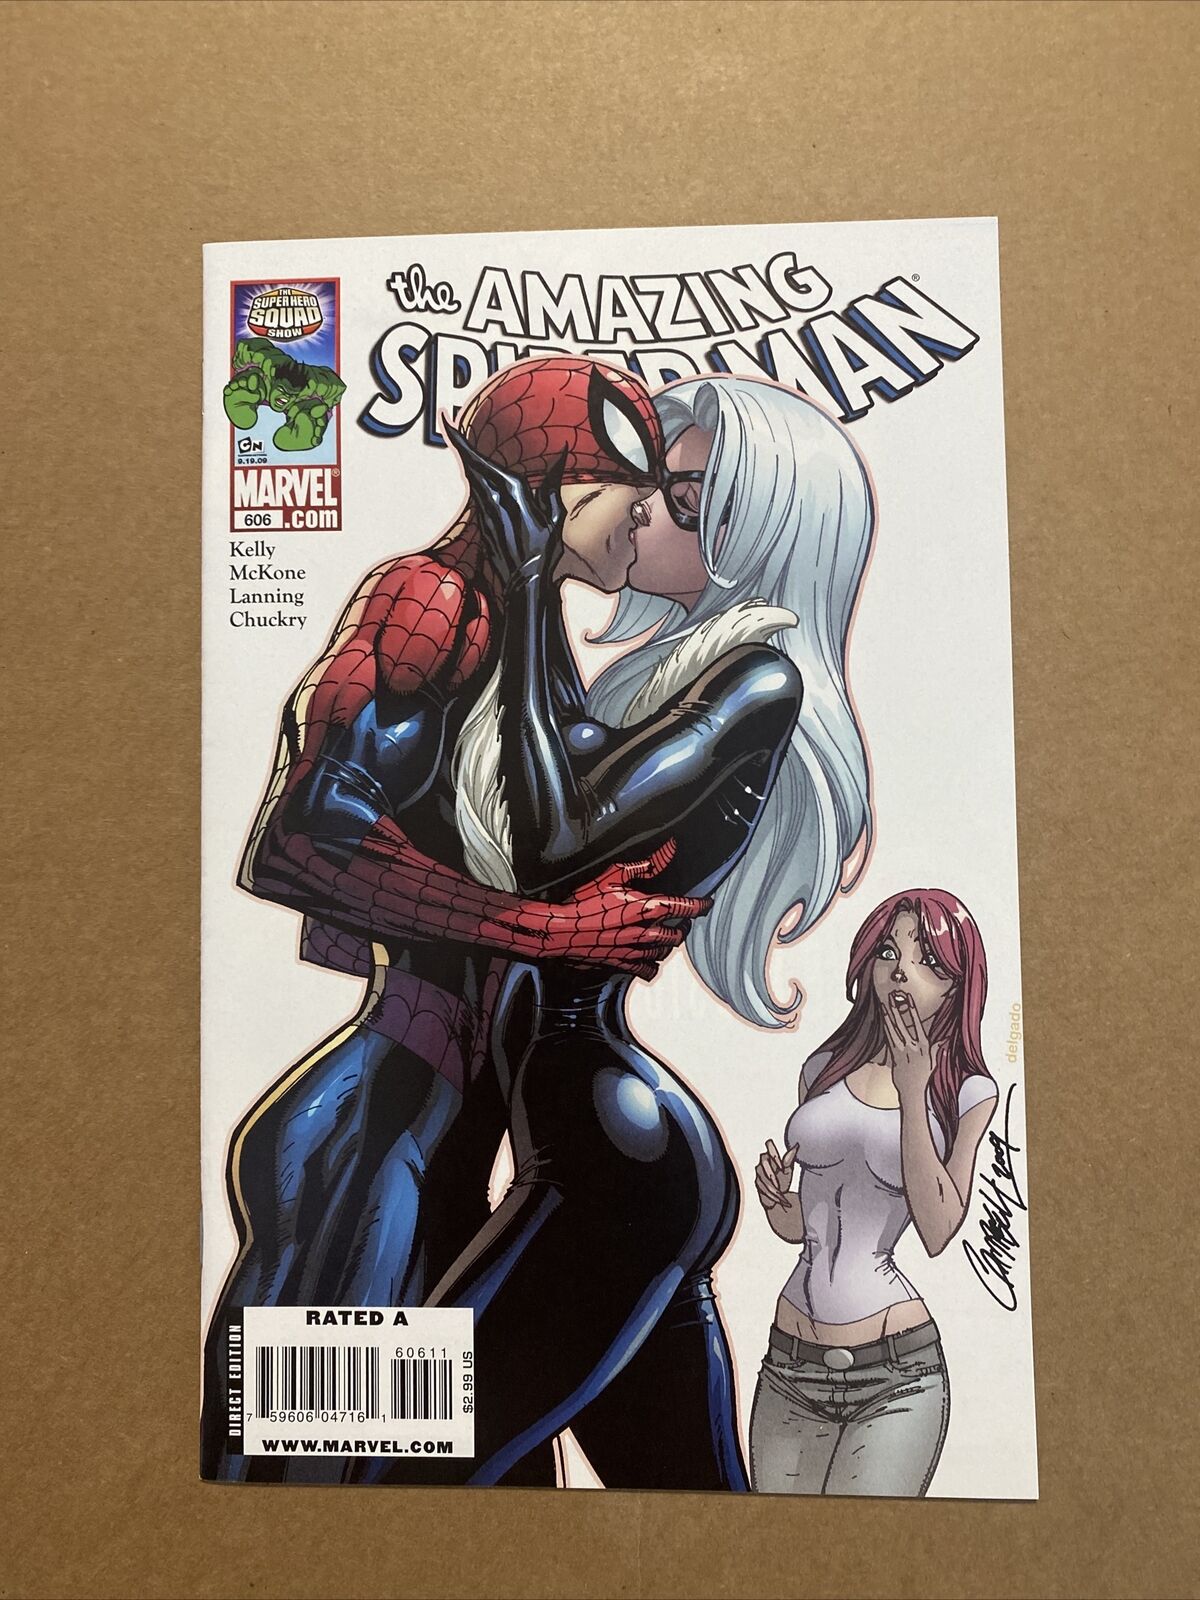 The Amazing Spider-Man #606 Featuring Black Cat (2009), Marvel Comics